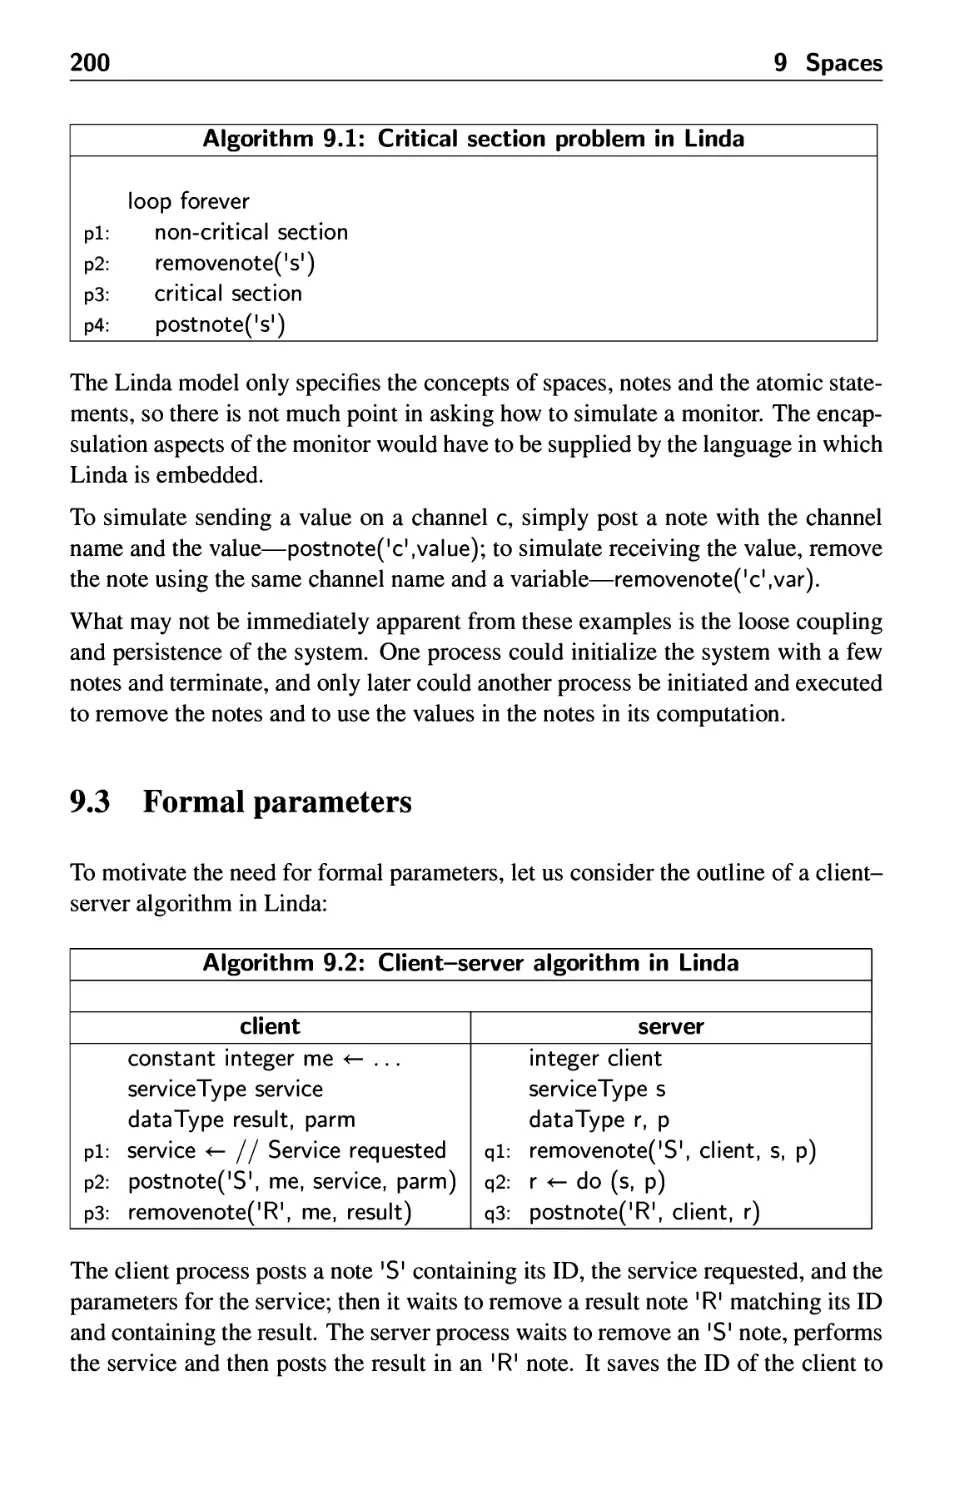 9.3 Formal parameters